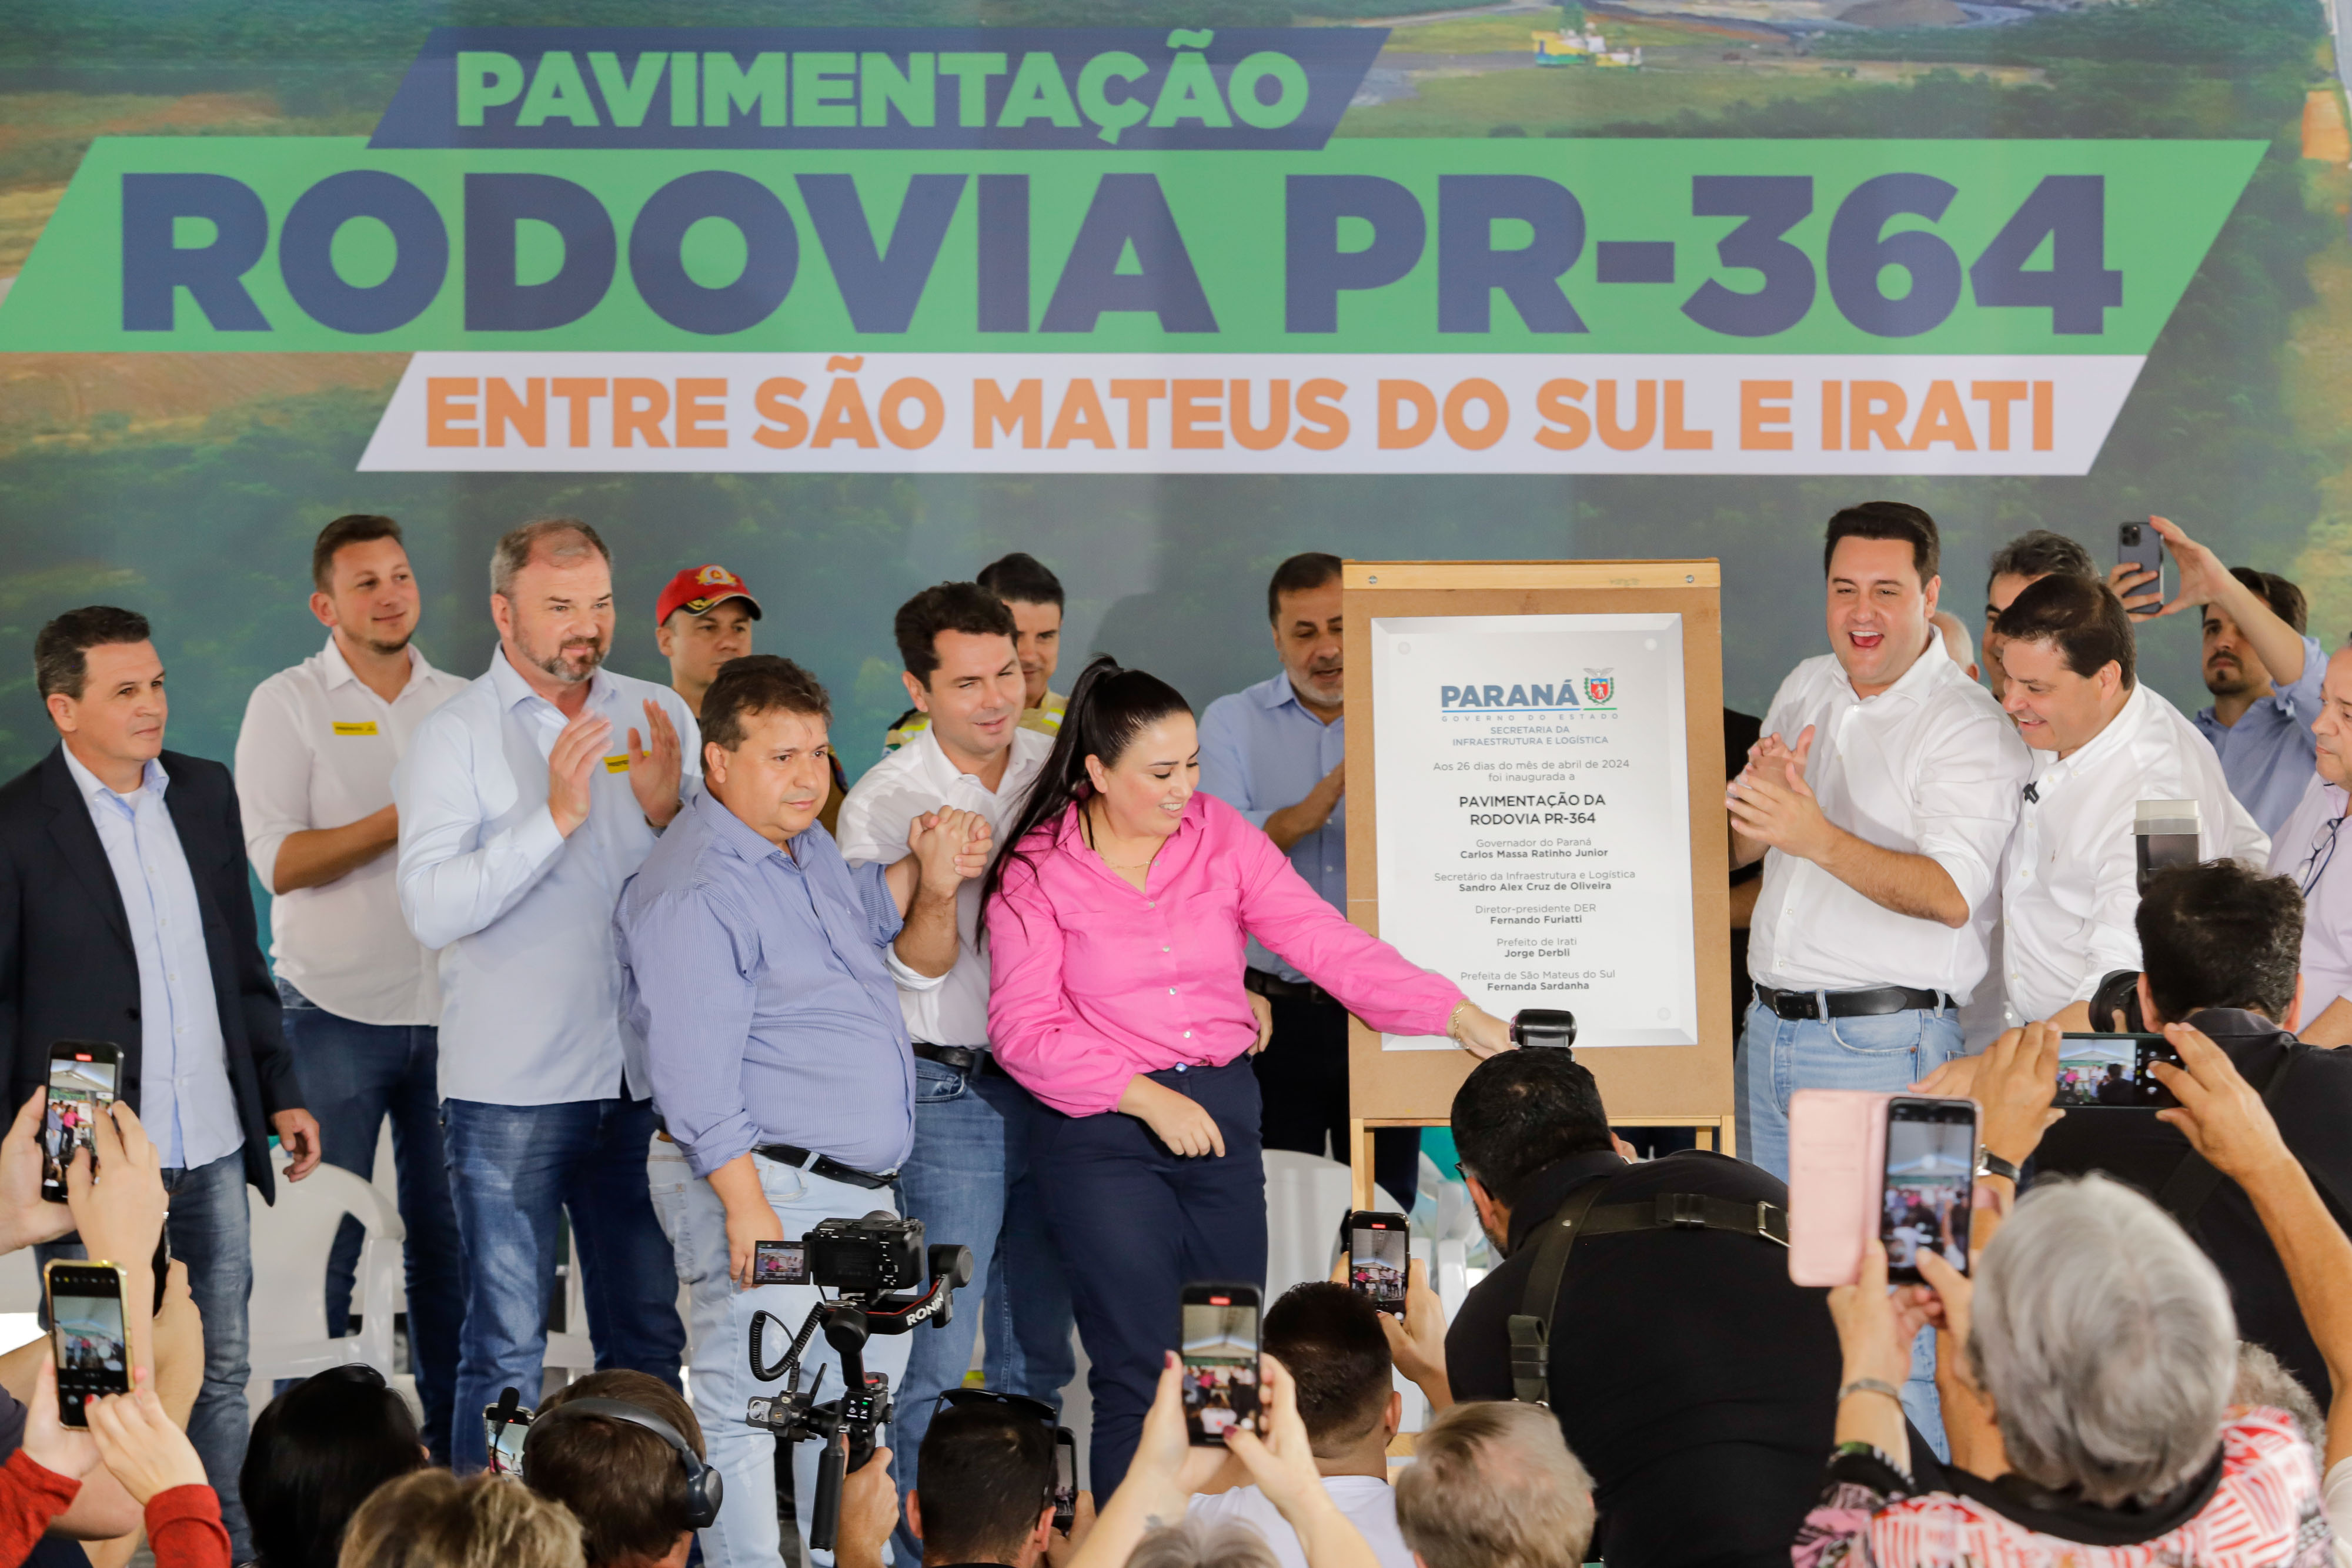 Ratinho Junior inaugura nova pavimentação da PR-364 entre São Mateus do Sul e Irati